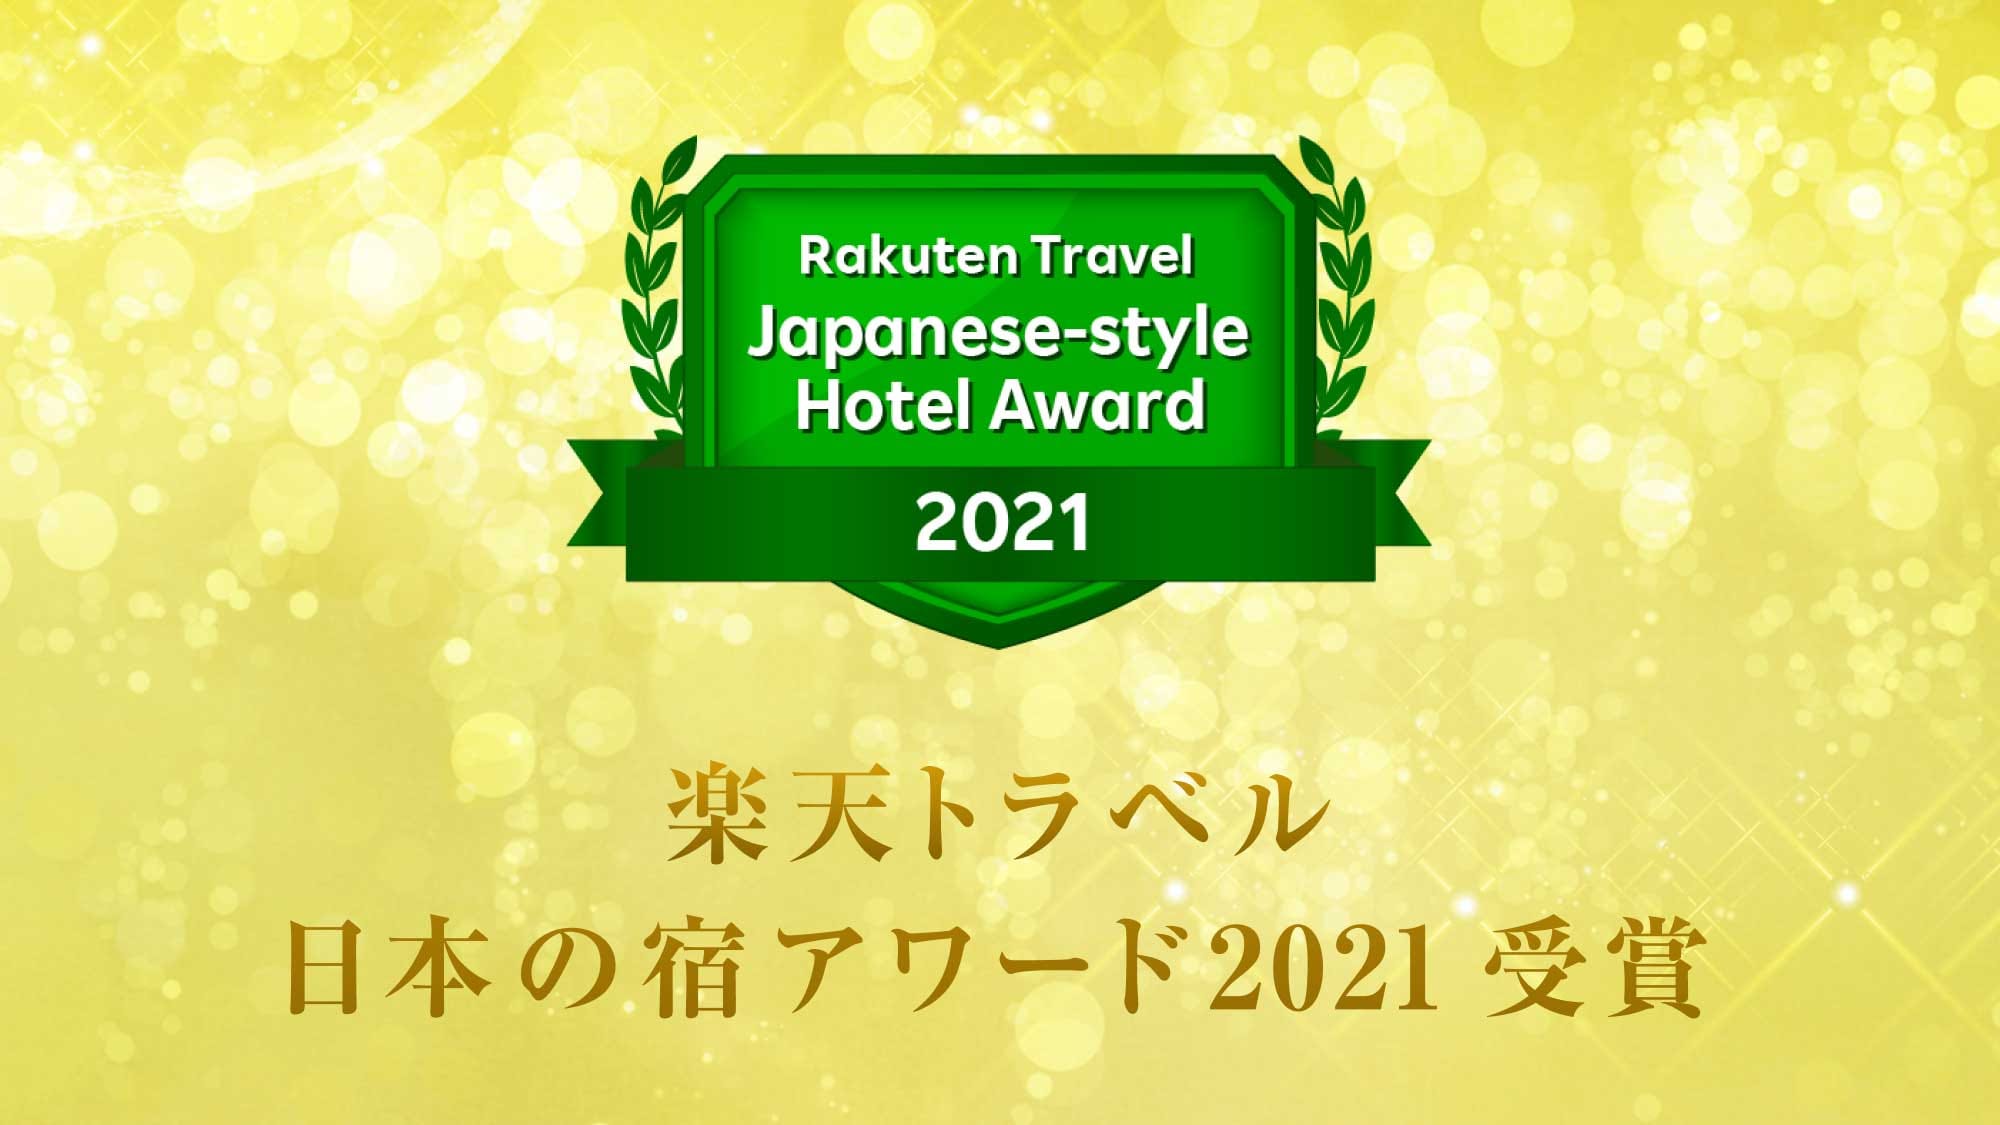 여러분 덕분에 「라쿠텐 여행 일본의 숙소 어워드 2021」을 수상했습니다.